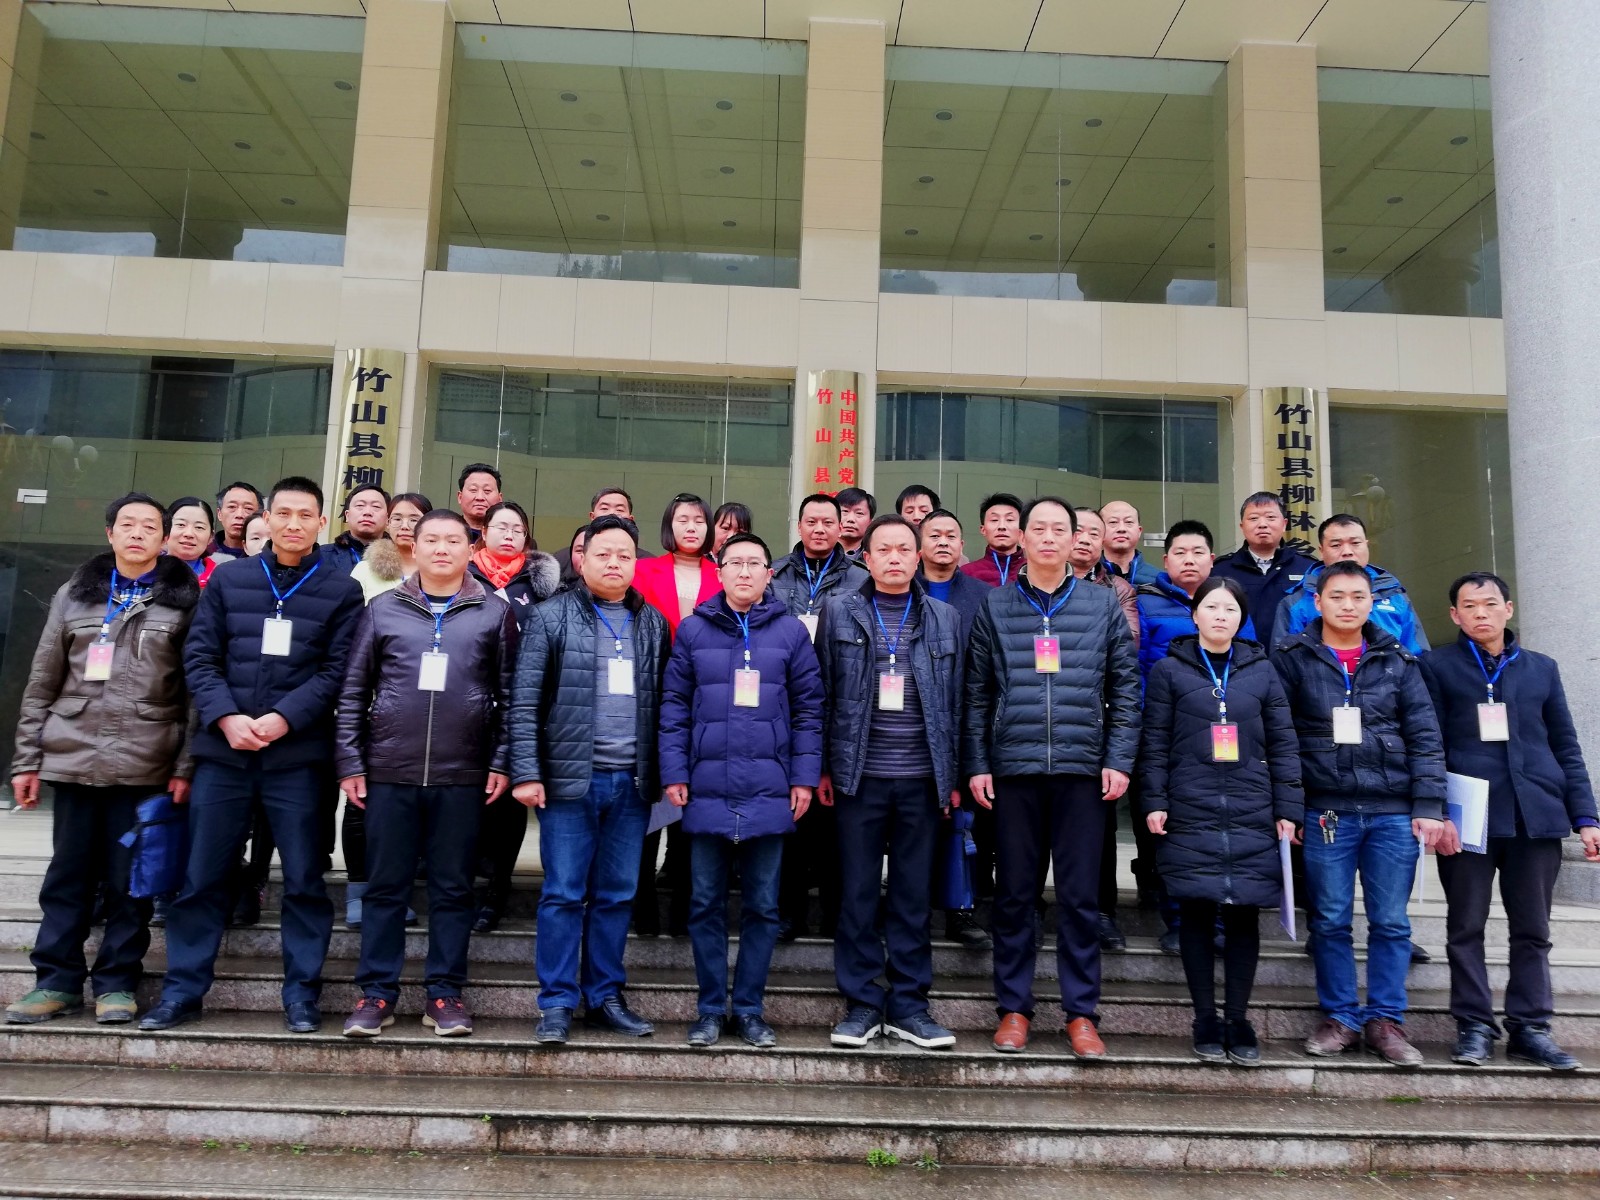 柳林乡科学技术协会正式成立